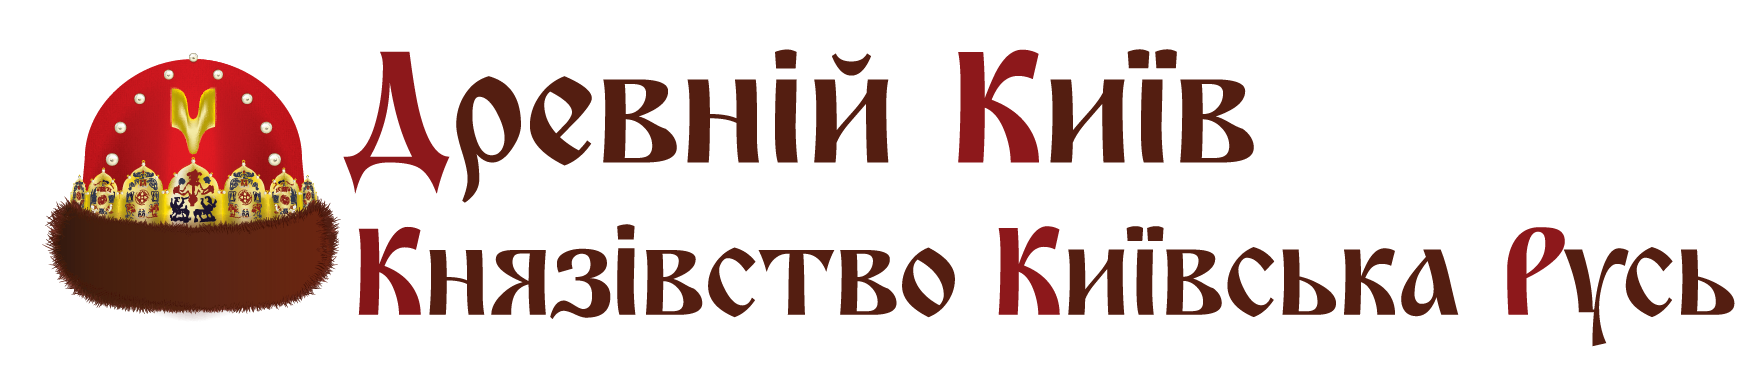 Парк Киевская Русь со скидкой -60%